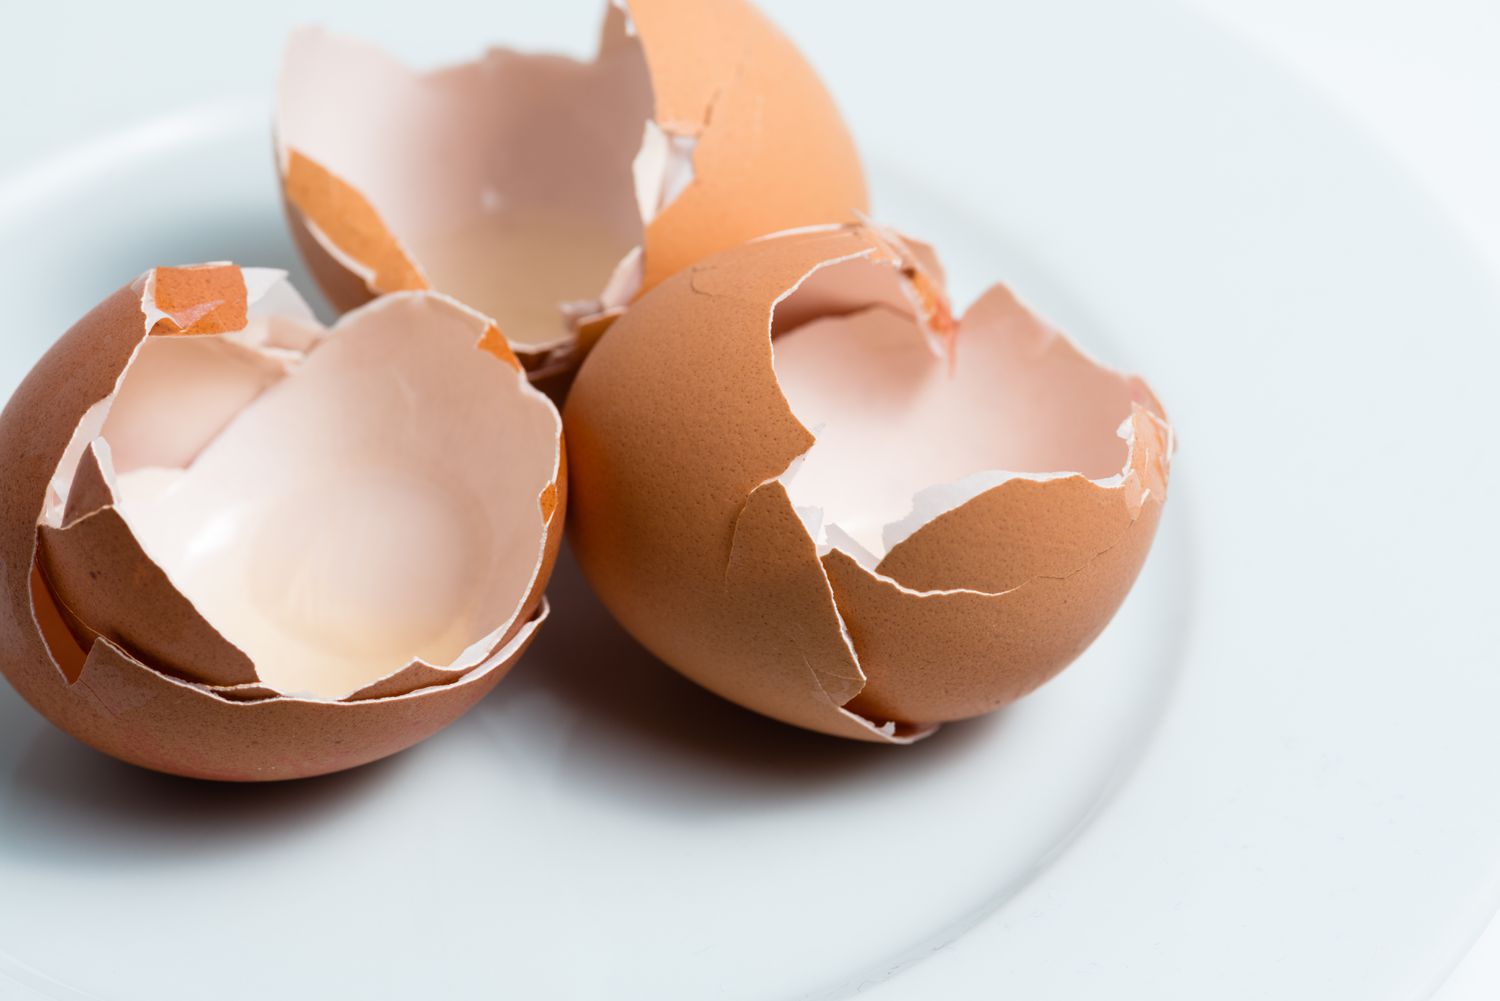 Zerbrochene Eierschalen auf einem weißen Teller